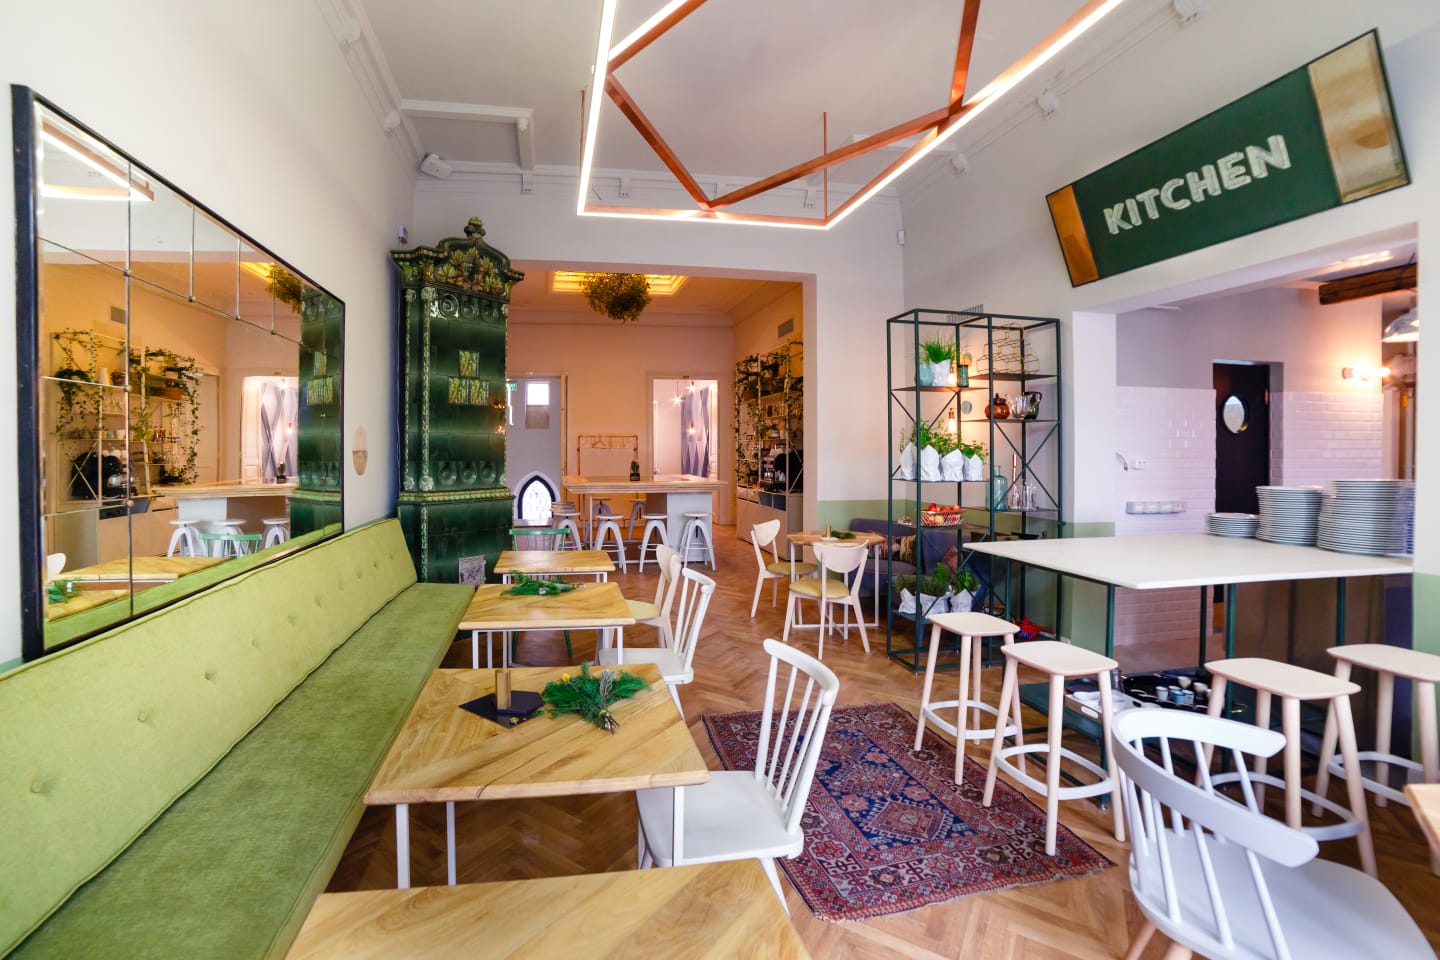 #AcasăLaSimbio imagine de ansamblu din restaurant Simbio, cu mai multe mese de lemn, o canapea lunga verde, pereti alba si o soba